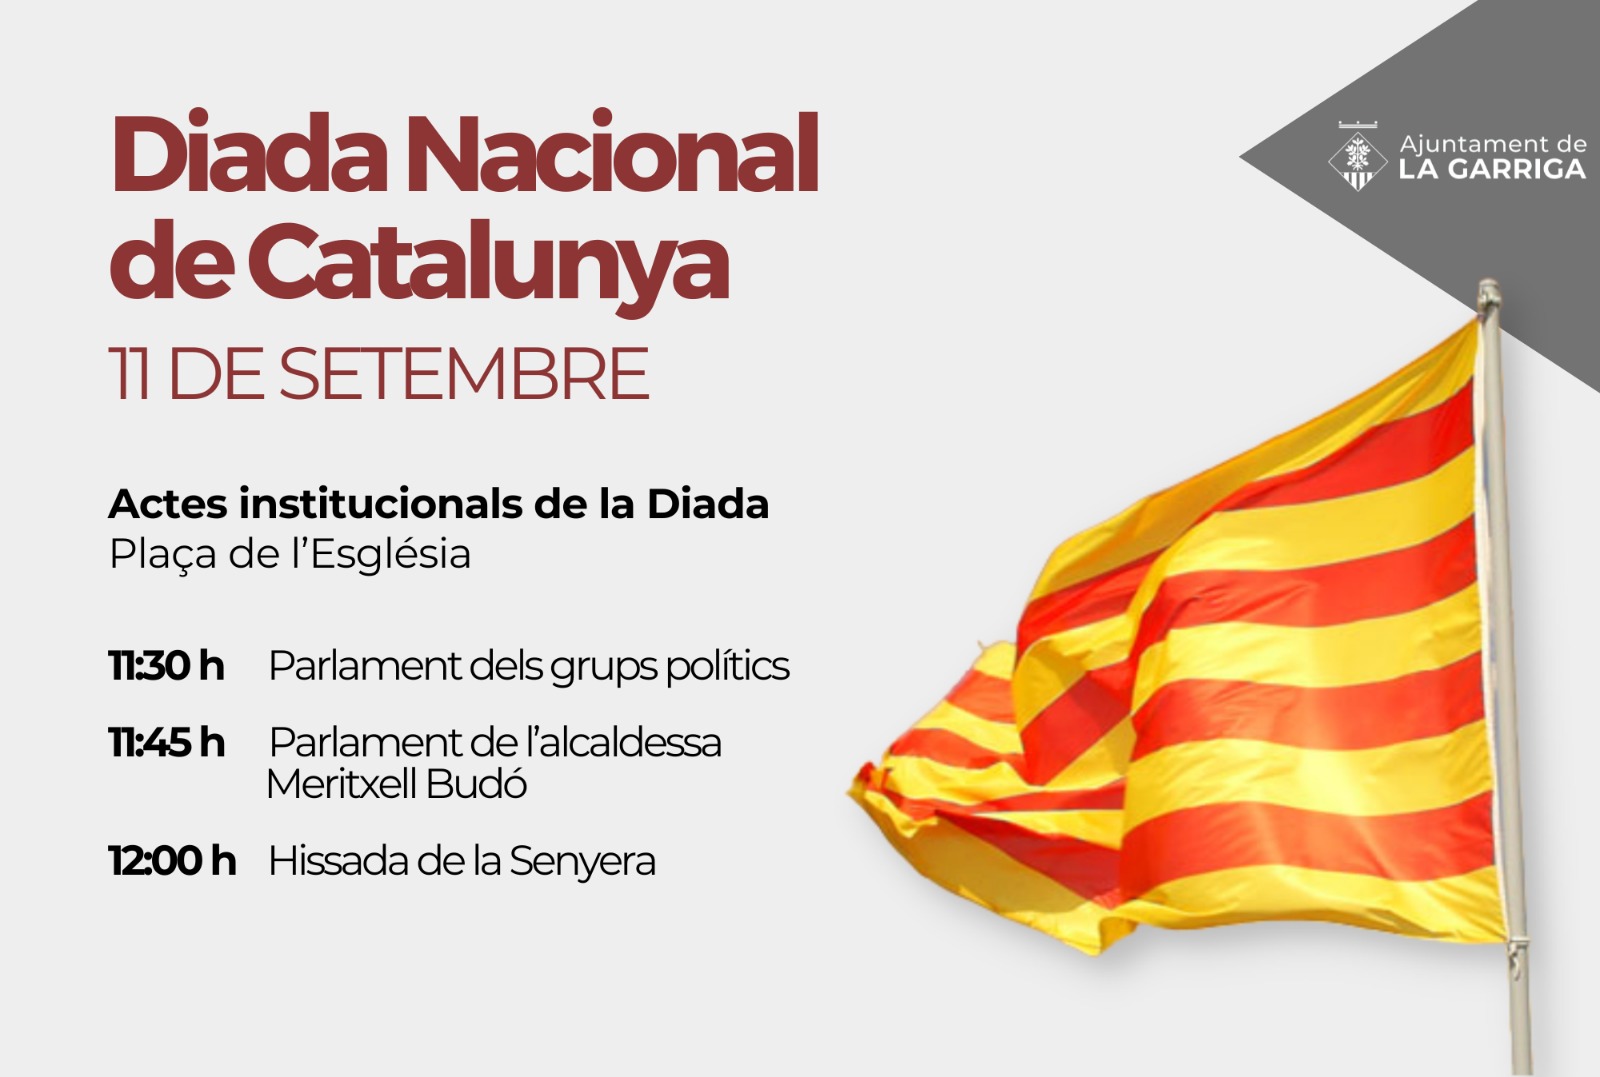 La Garriga commemora la Diada de Catalunya